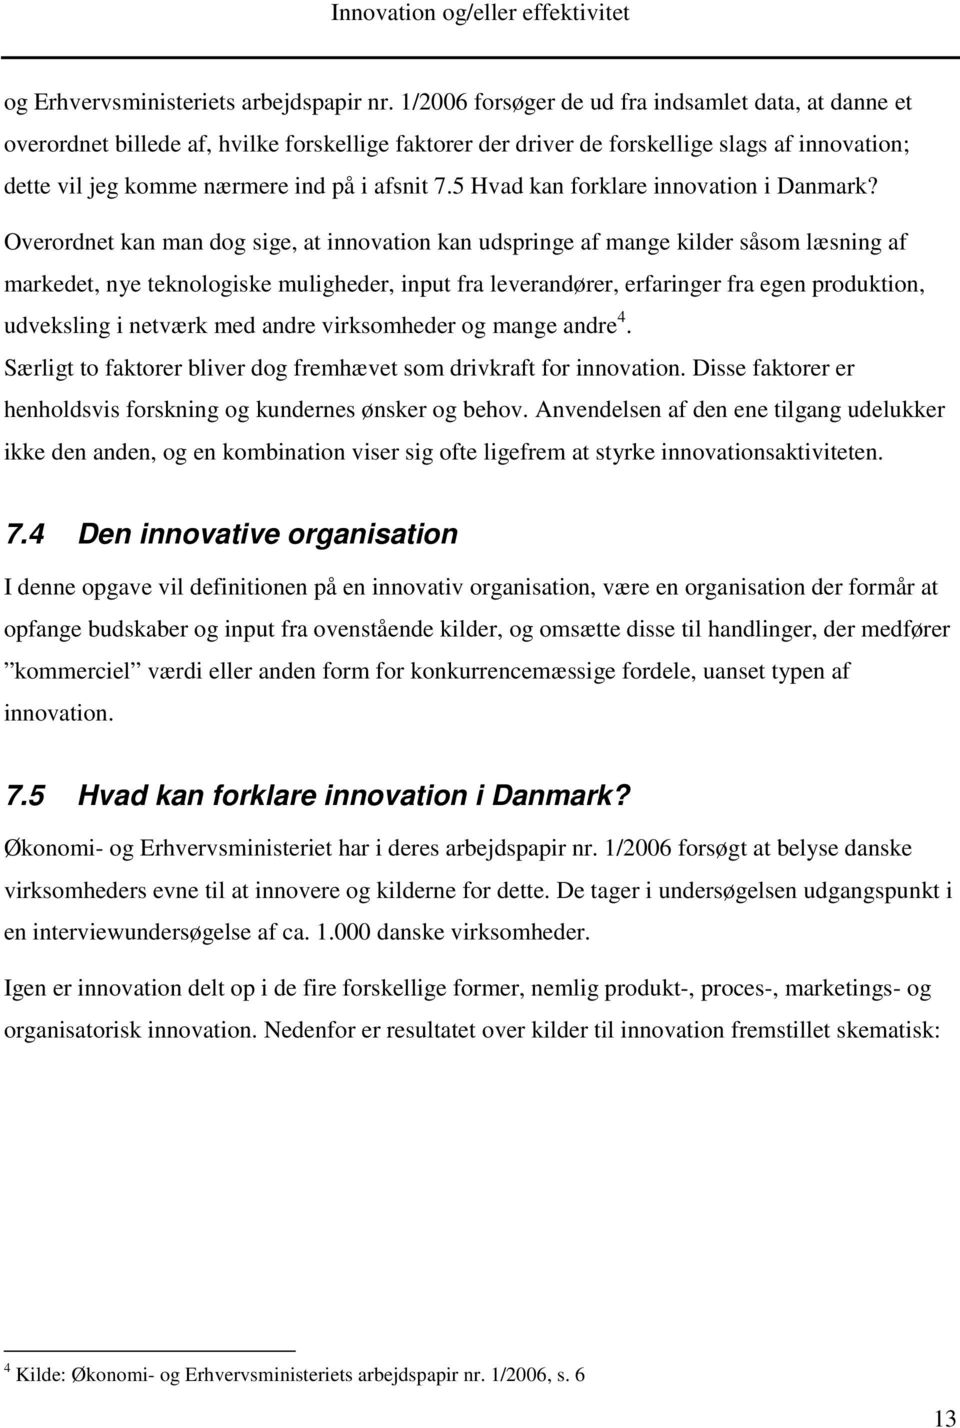 5 Hvad kan forklare innovation i Danmark?